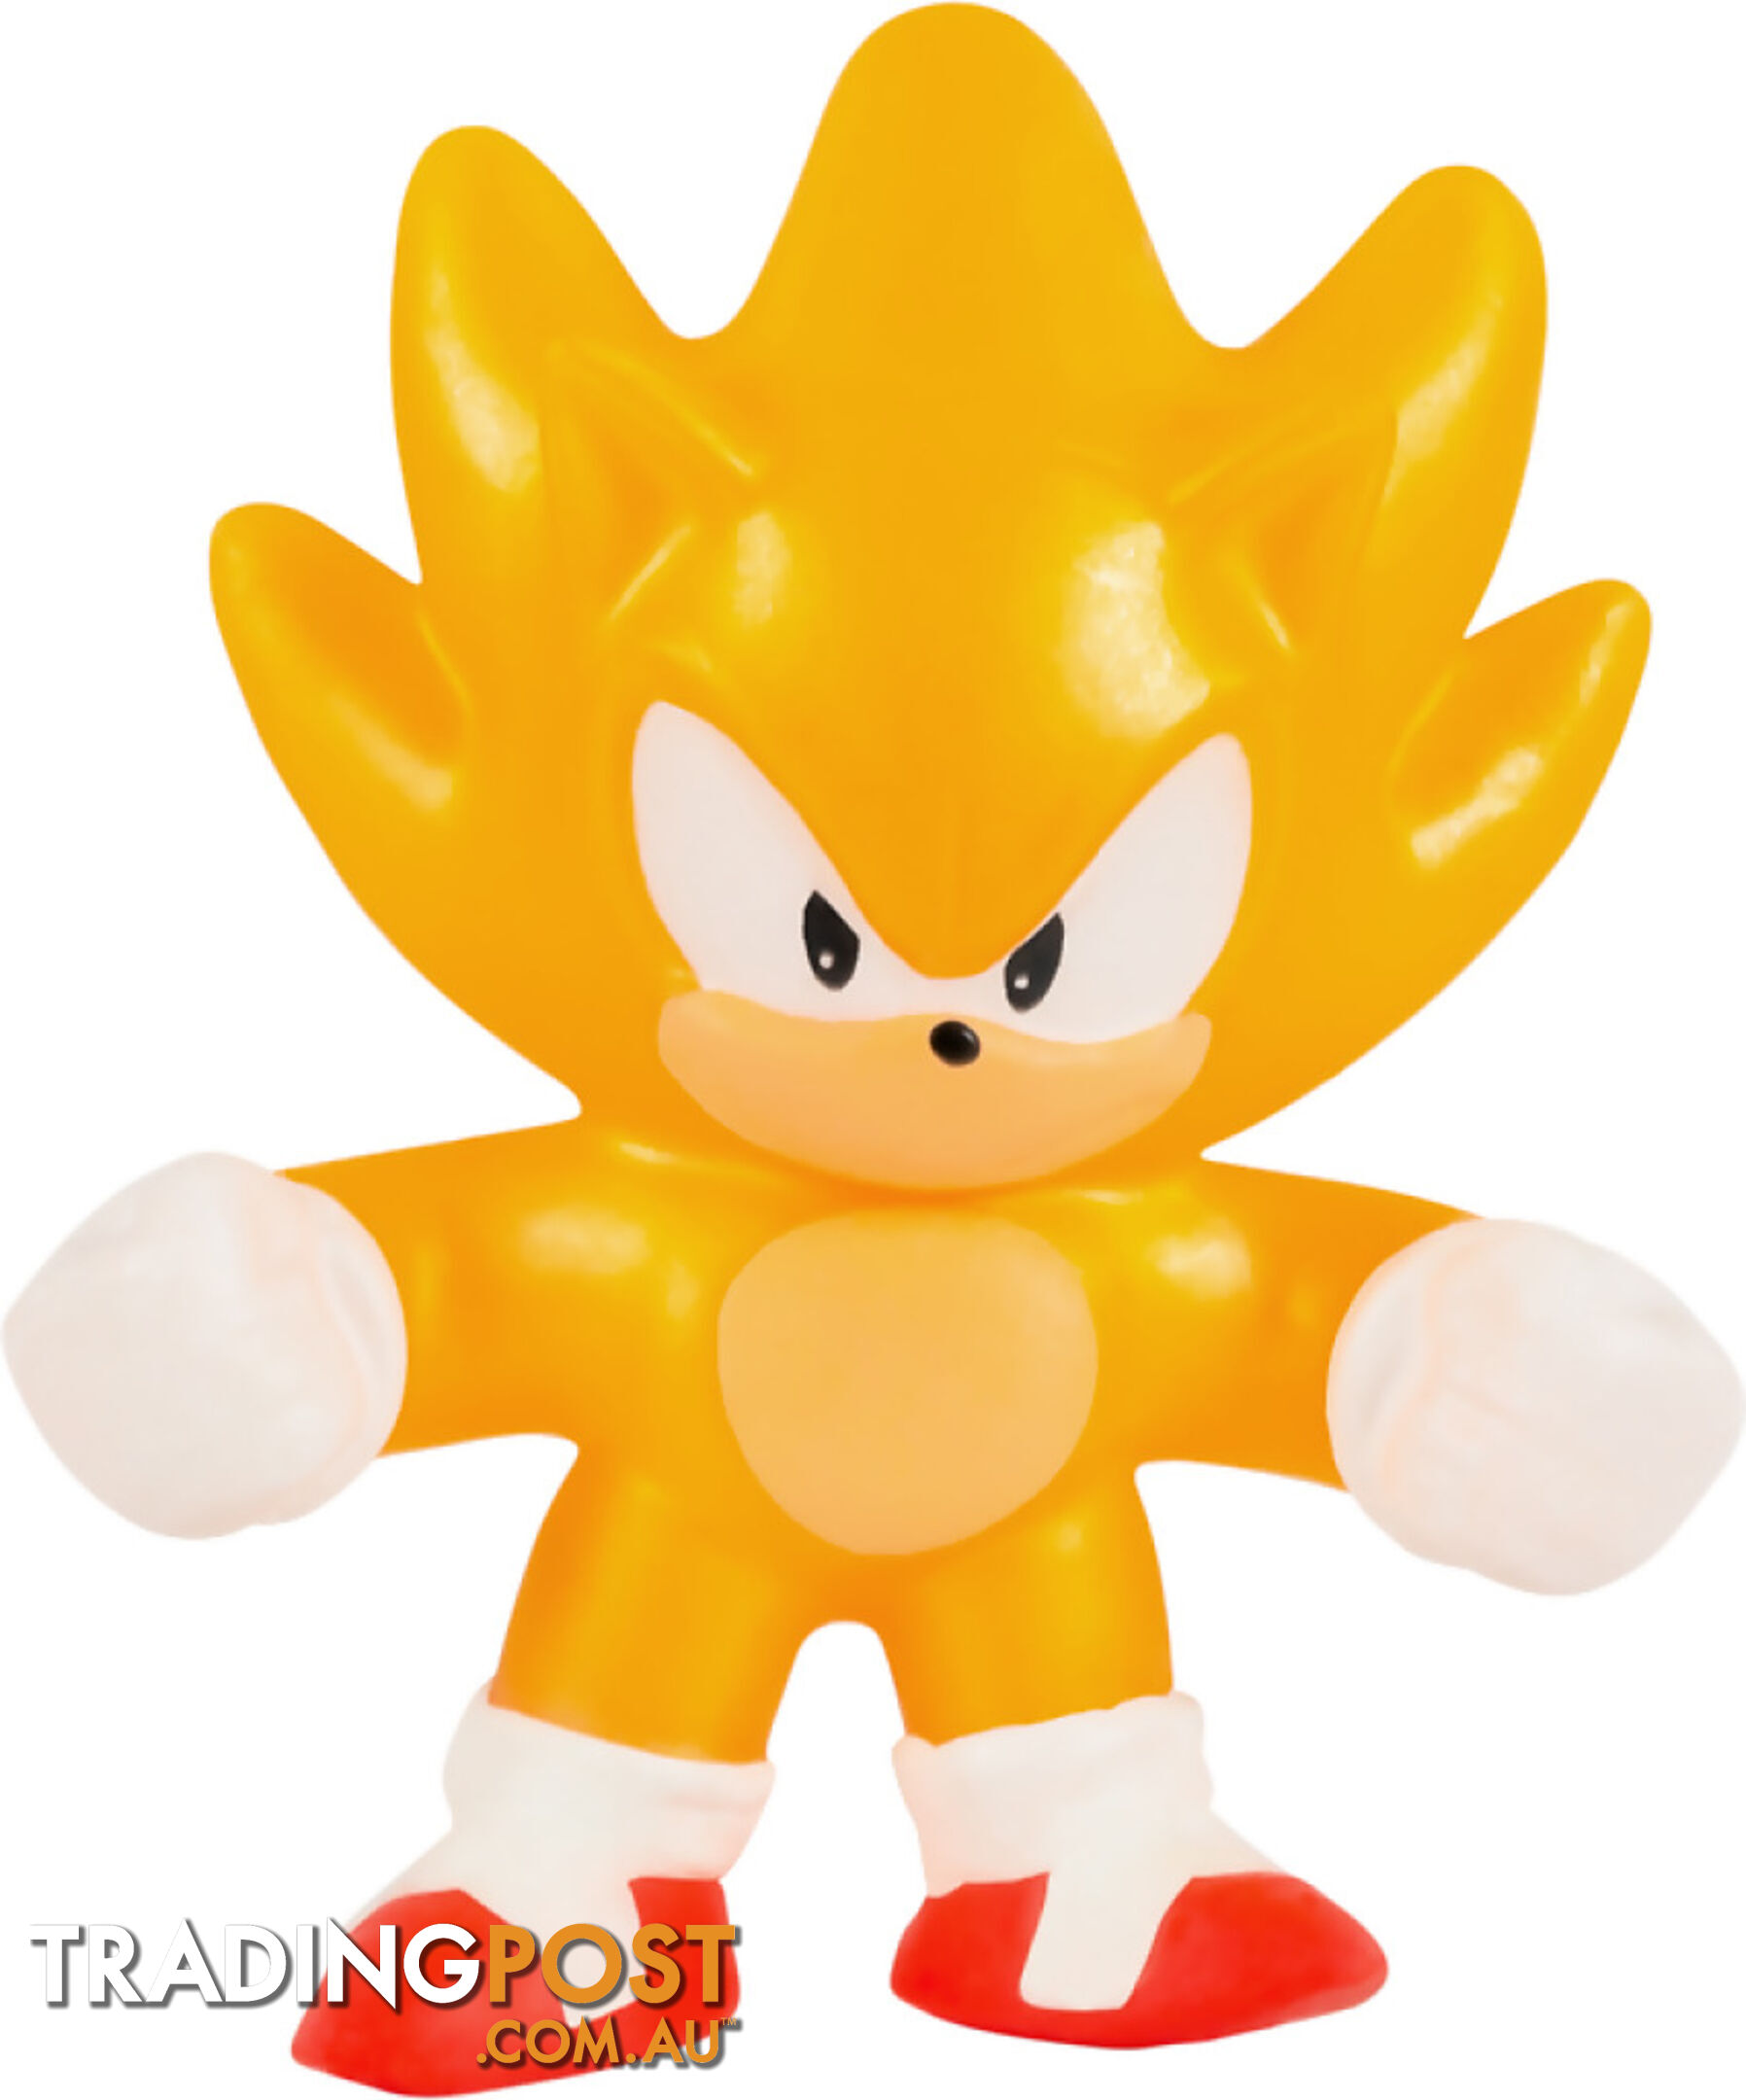 Heroes Of Goo Jit Zu - Sonic S3 Minis Mega 6 Pack - Mj42826 - 630996428269